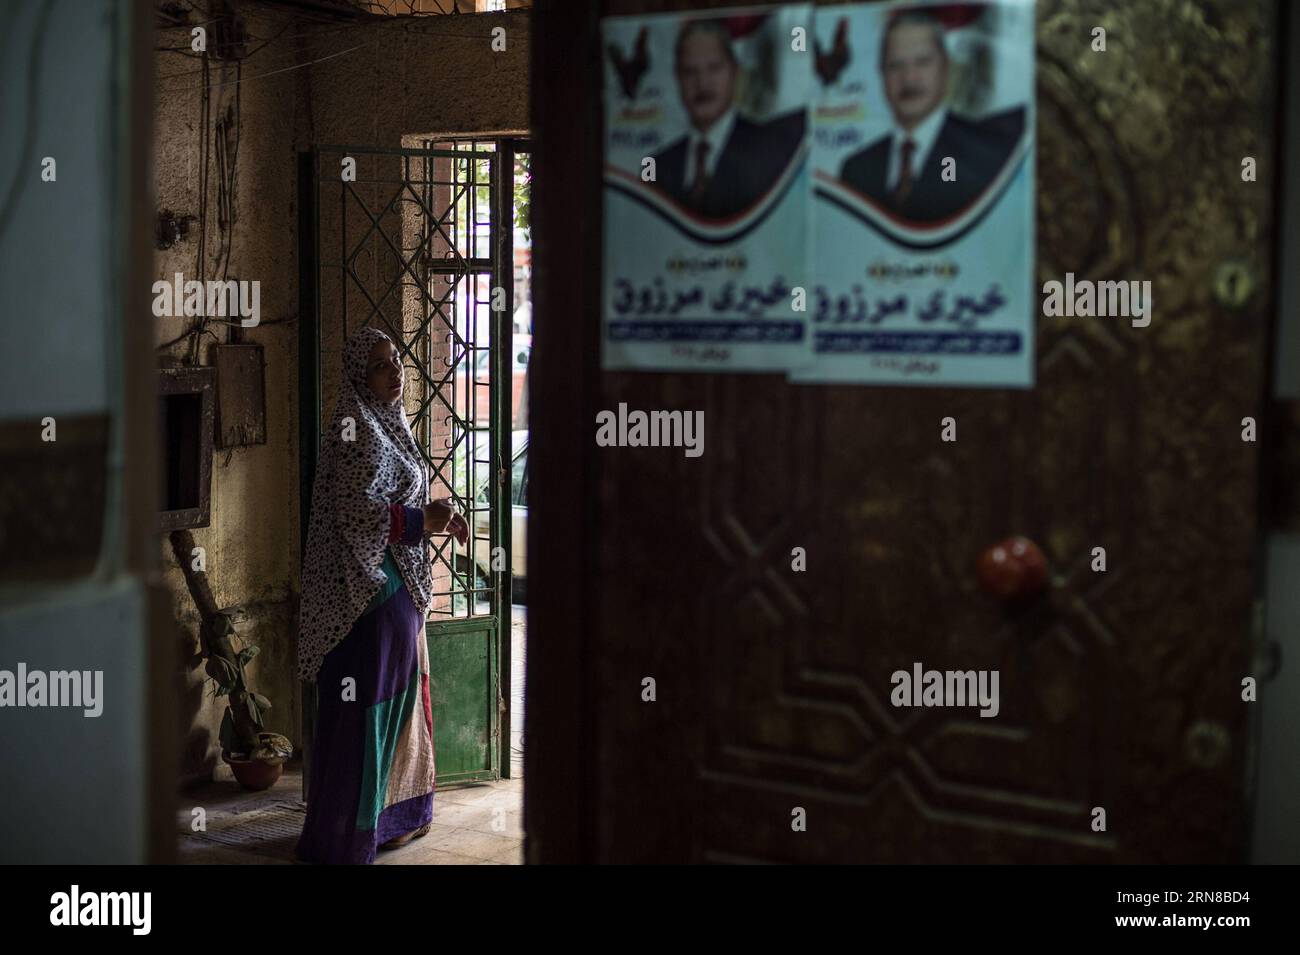 (151015) -- MINYA, 15. Oktober 2015 -- eine ägyptische Frau steht vor dem Büro von Khairy Marzouk, einem unabhängigen Kandidaten für die anstehenden parlamentswahlen im Stadtzentrum von El-Minya, Ägypten, am 15. Oktober 2015. Die lang erwarteten Parlamentswahlen in Ägypten werden in zwei Phasen durchgeführt, die sich auf die 27 Provinzen des Landes erstrecken. Die erste Phase, die 14 Provinzen umfasst, findet am 18. Und 19. Oktober statt, die zweite Phase, die die übrigen 13 Provinzen am 22. Und 23. November umfasst. ) ÄGYPTEN-MINYA-PARLAMENTSWAHLEN PanxChaoyue PUBLICATIONxNOTxINxCHN Minya OKT 15 2015 an ägyptische Frau steht außerhalb des Amtes Stockfoto